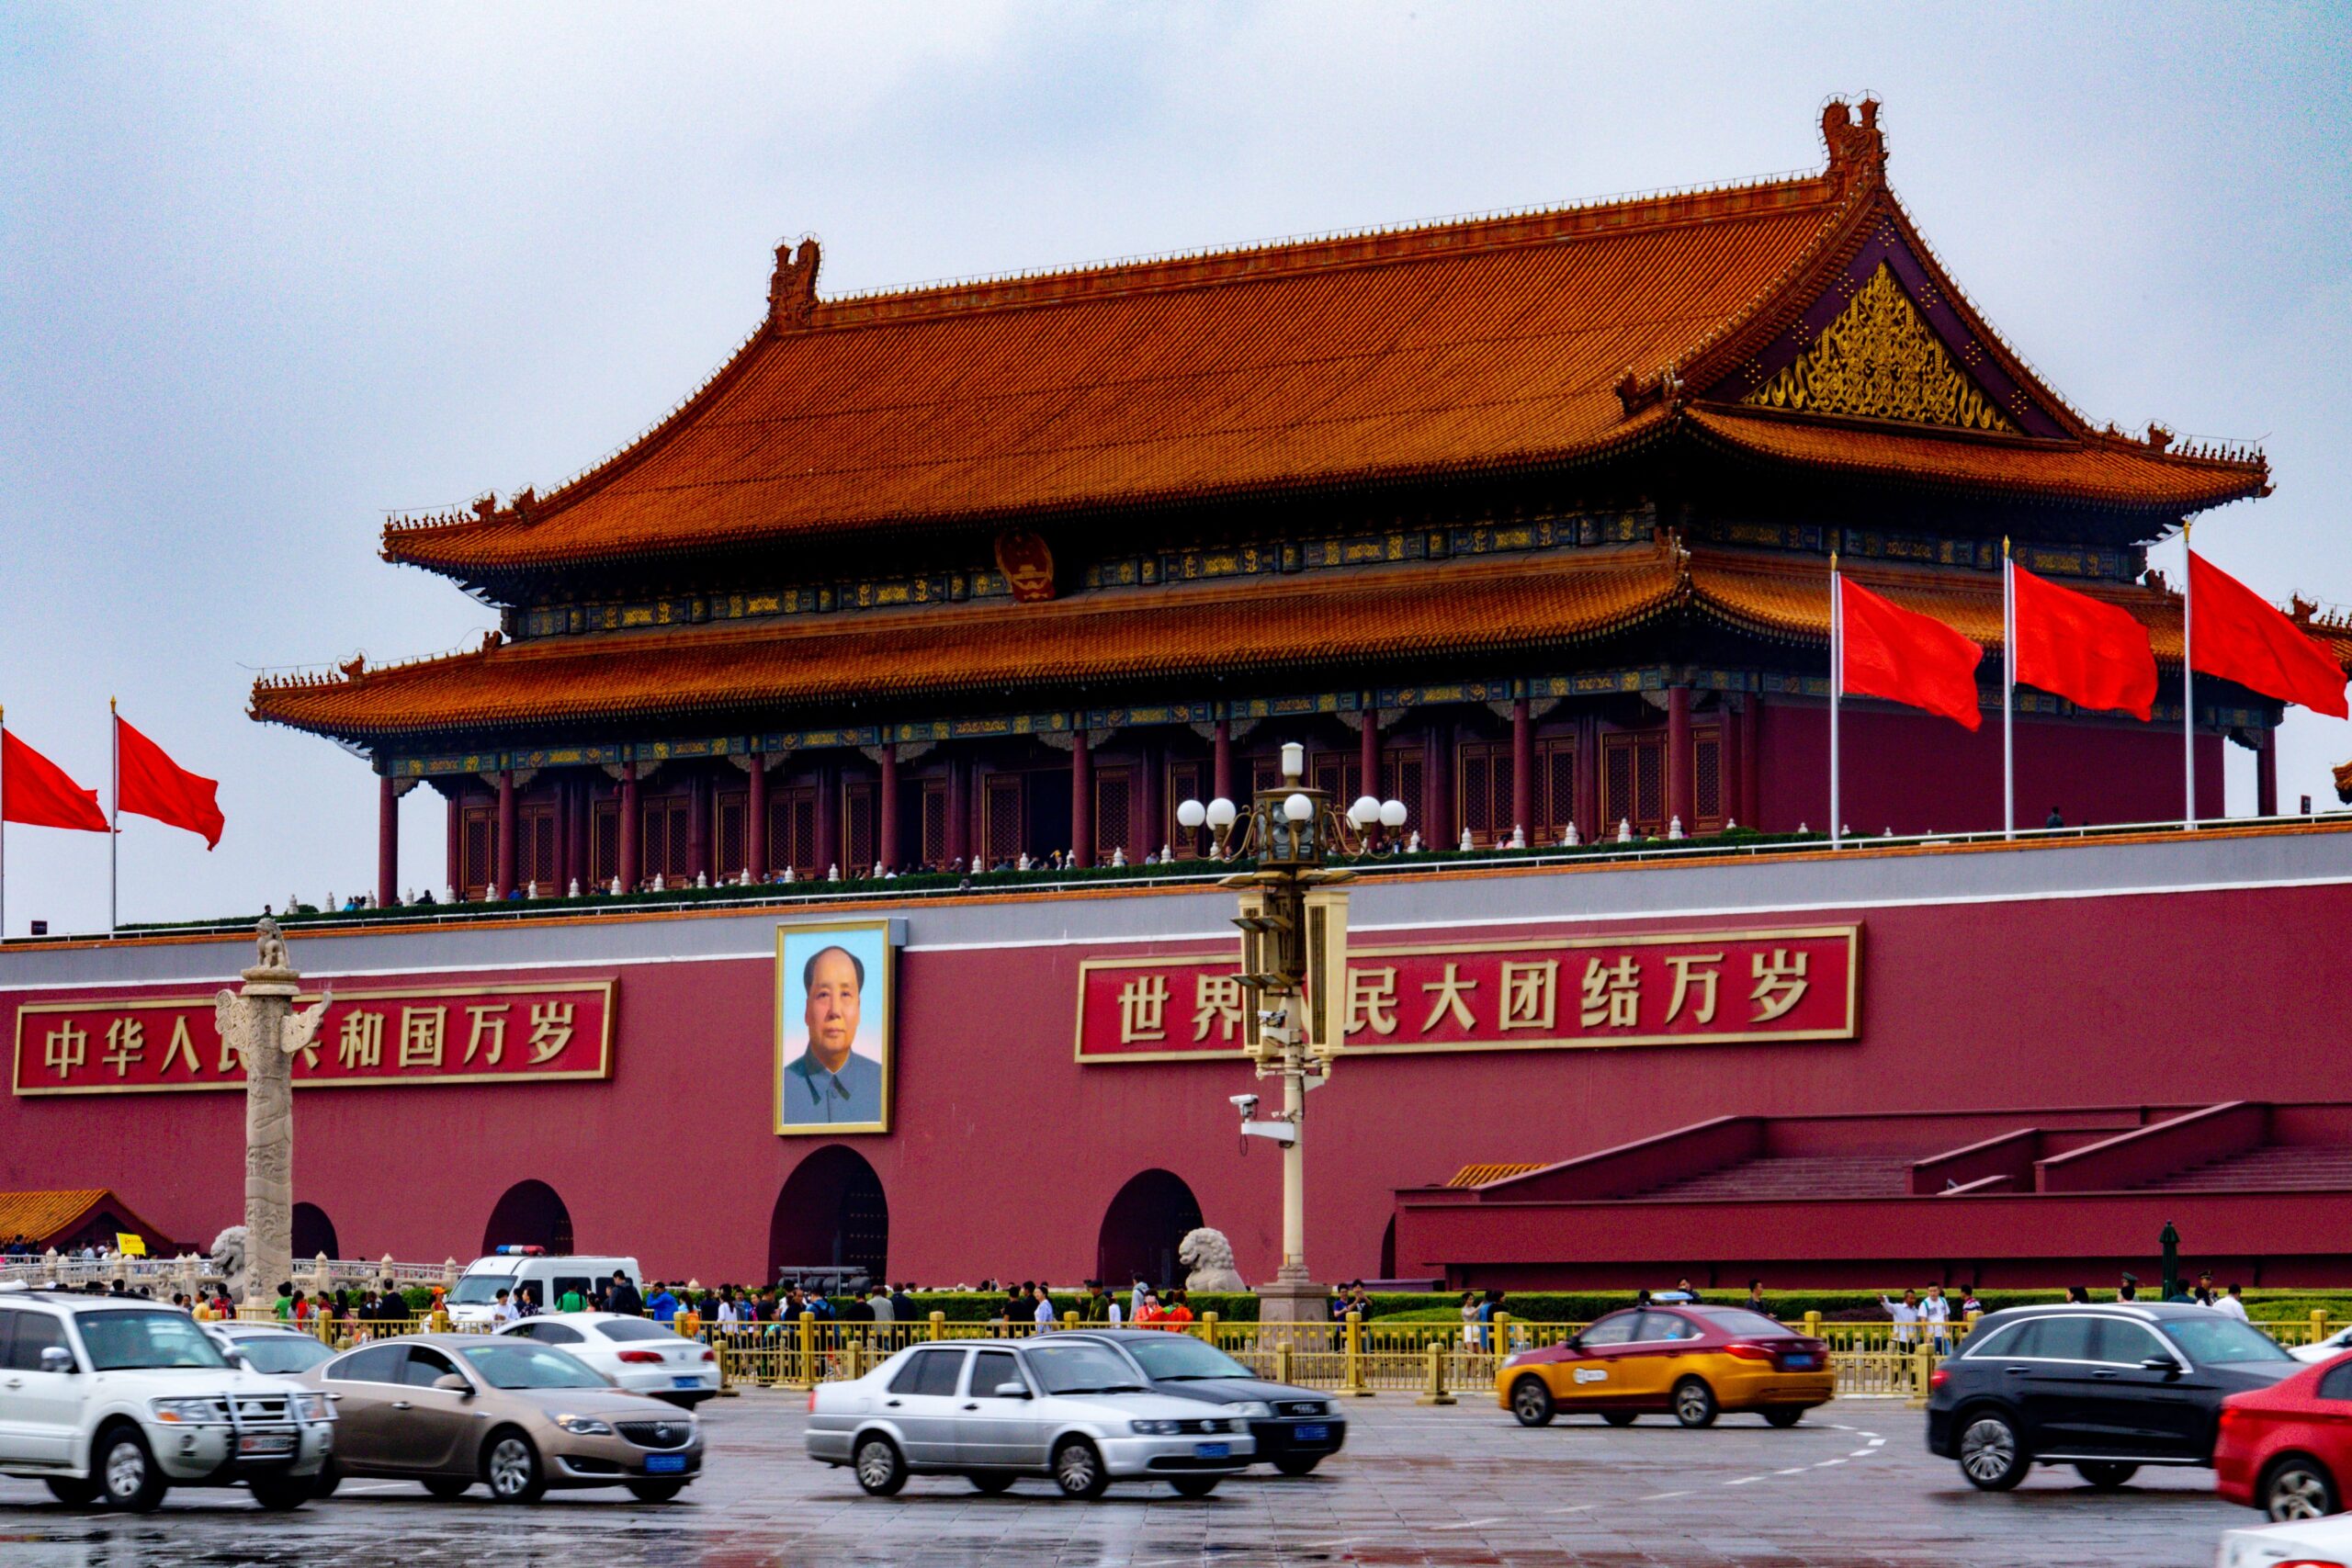 Tiananmen Square, Wangfujing, Dongcheng, Beijing, China